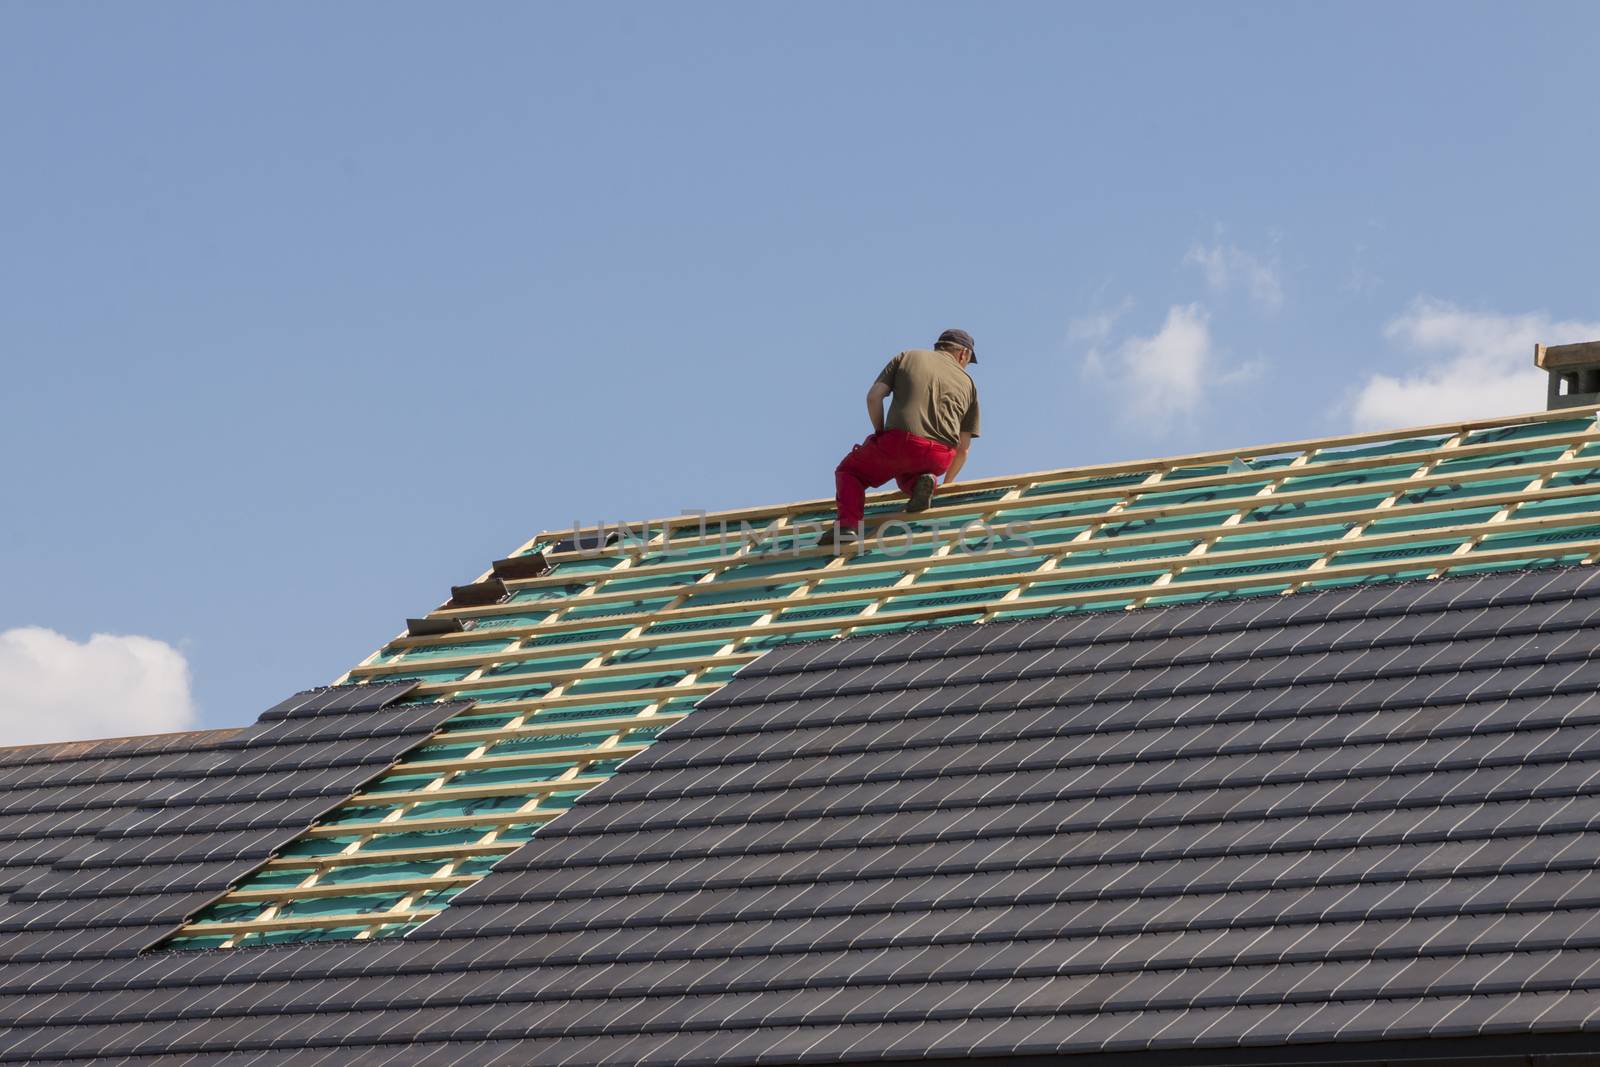 Roofer in work by parys